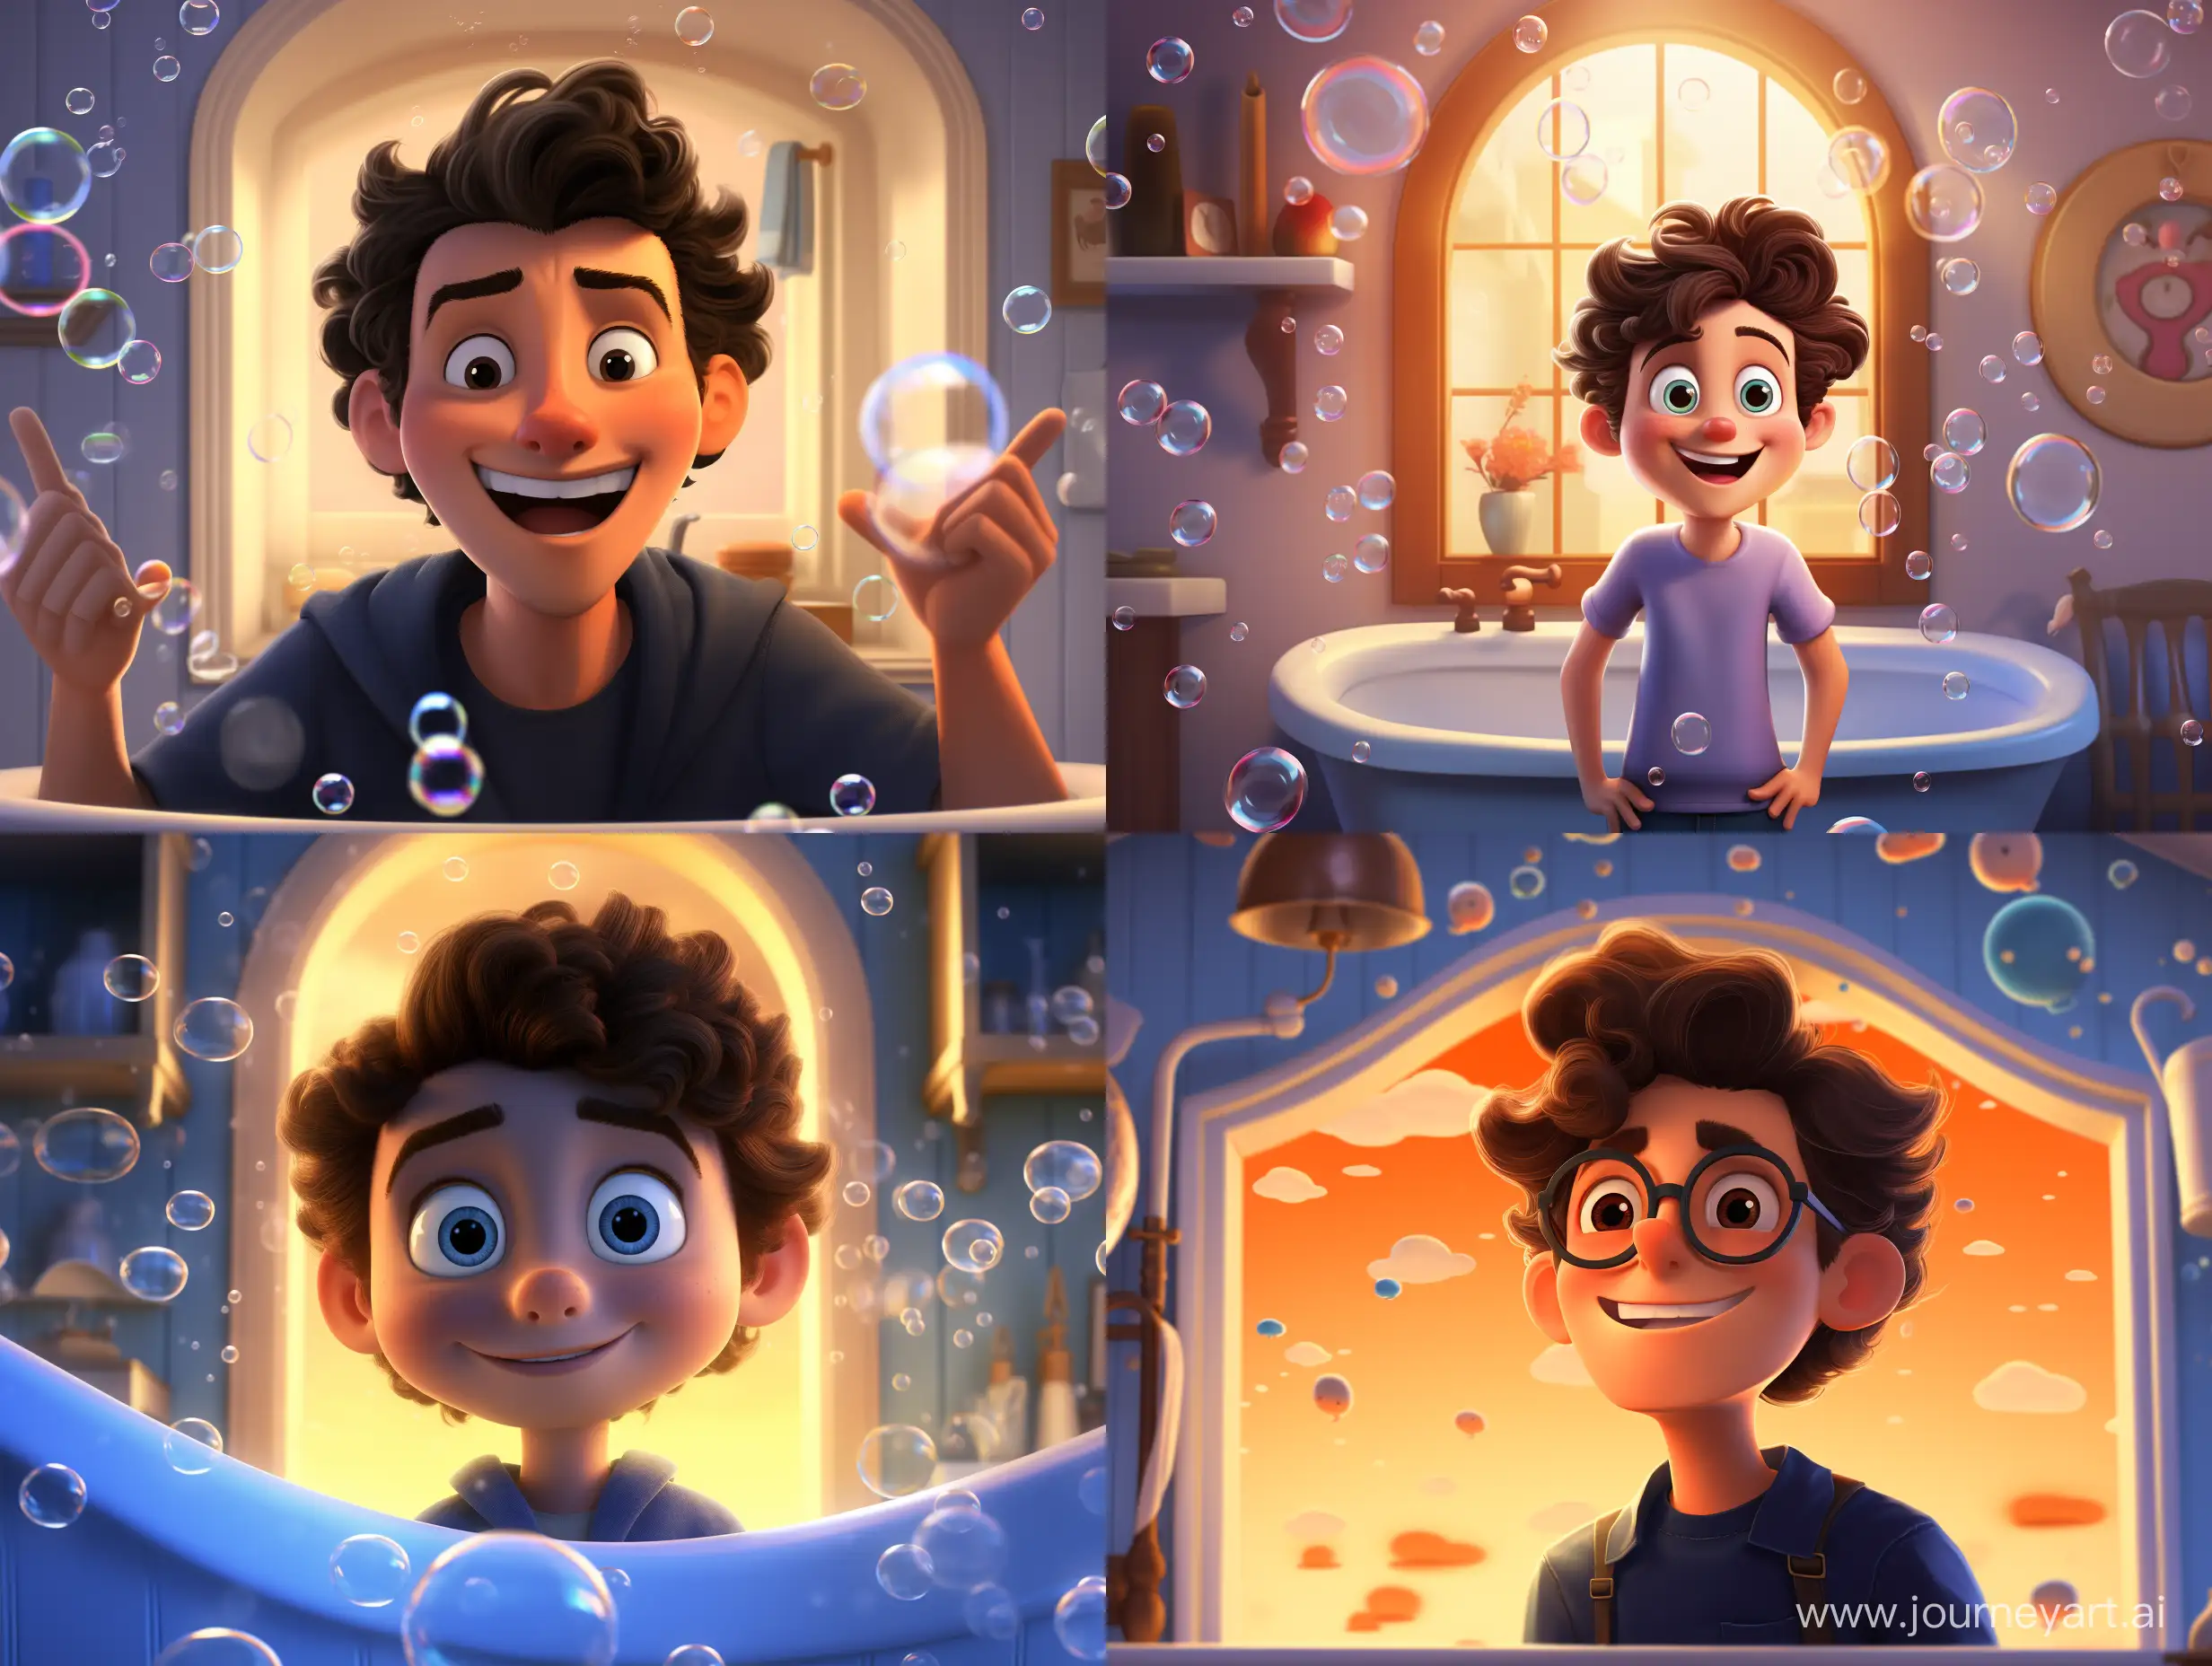 pixar style of a милый, прелестный и парень в ванной стоит перед зеркалом. Фон как будто в пузырях ванны